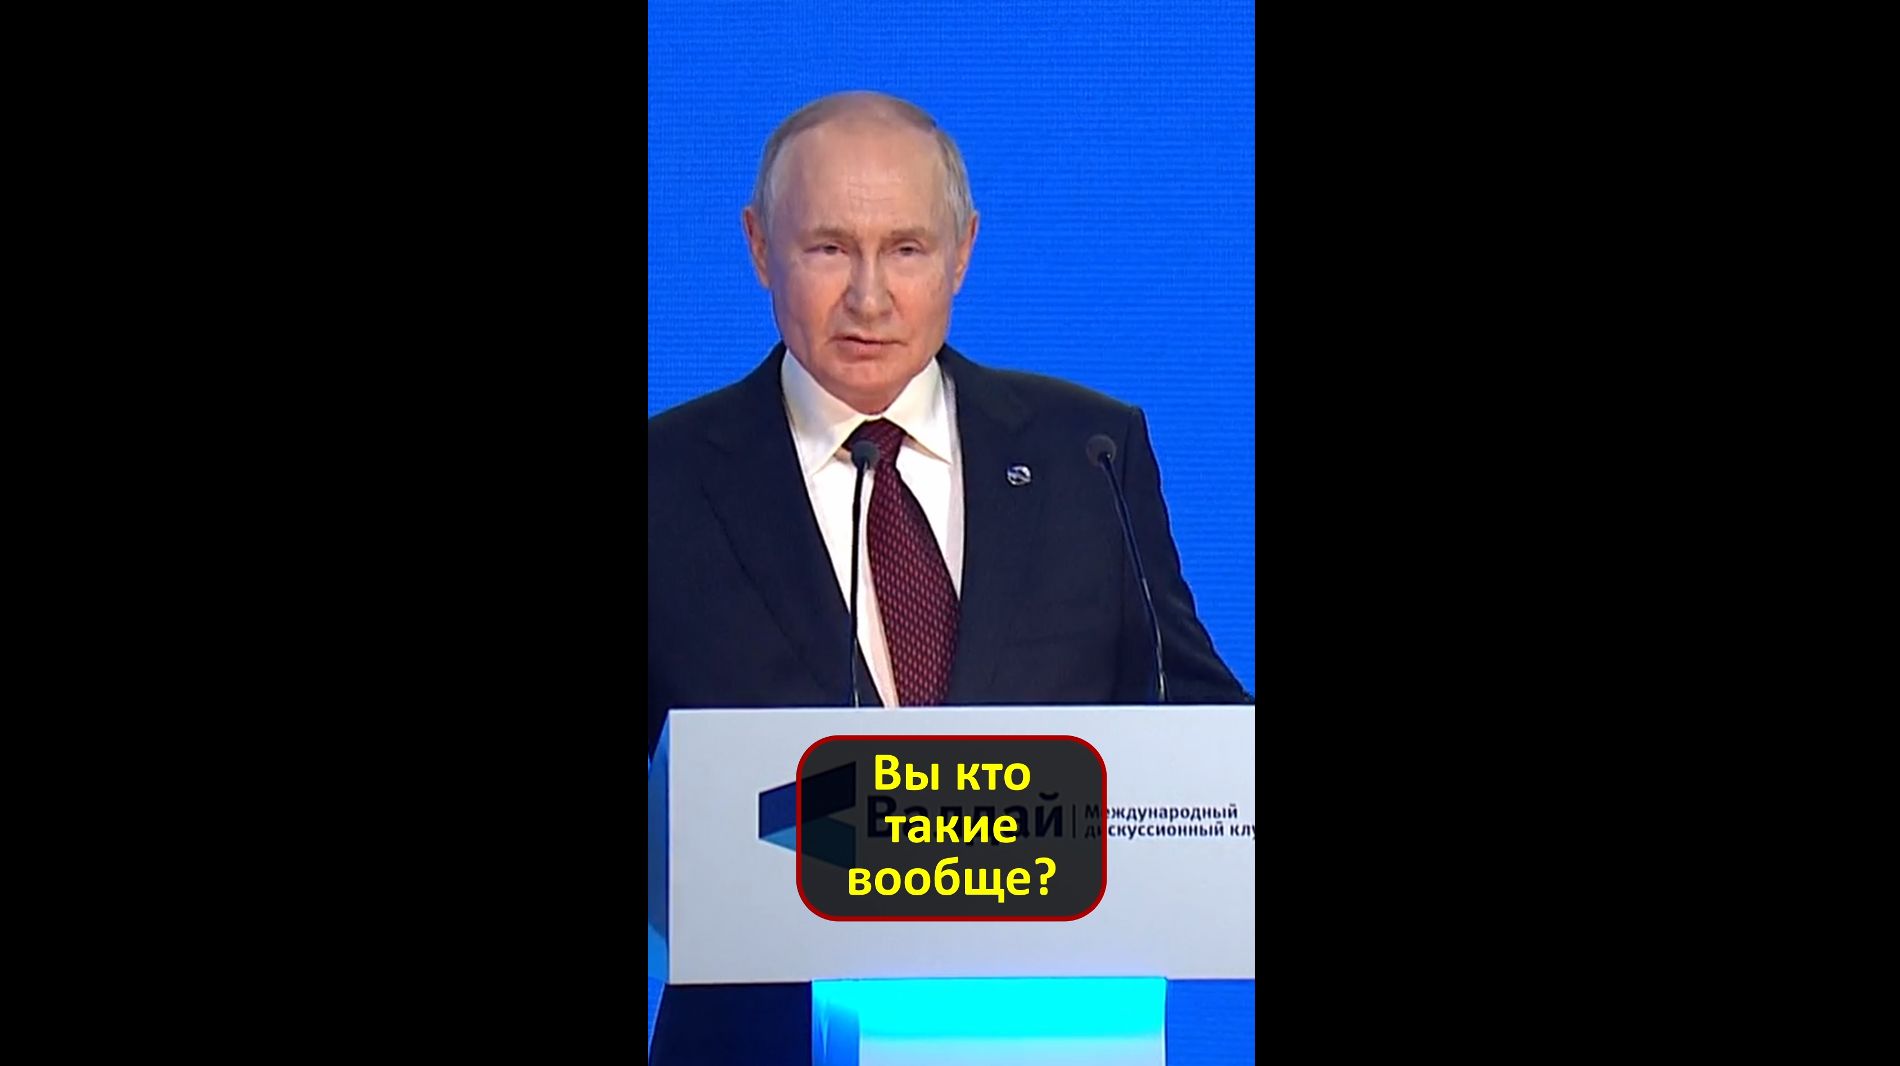 В.В.Путин: "...Вы кто такие вообще?"